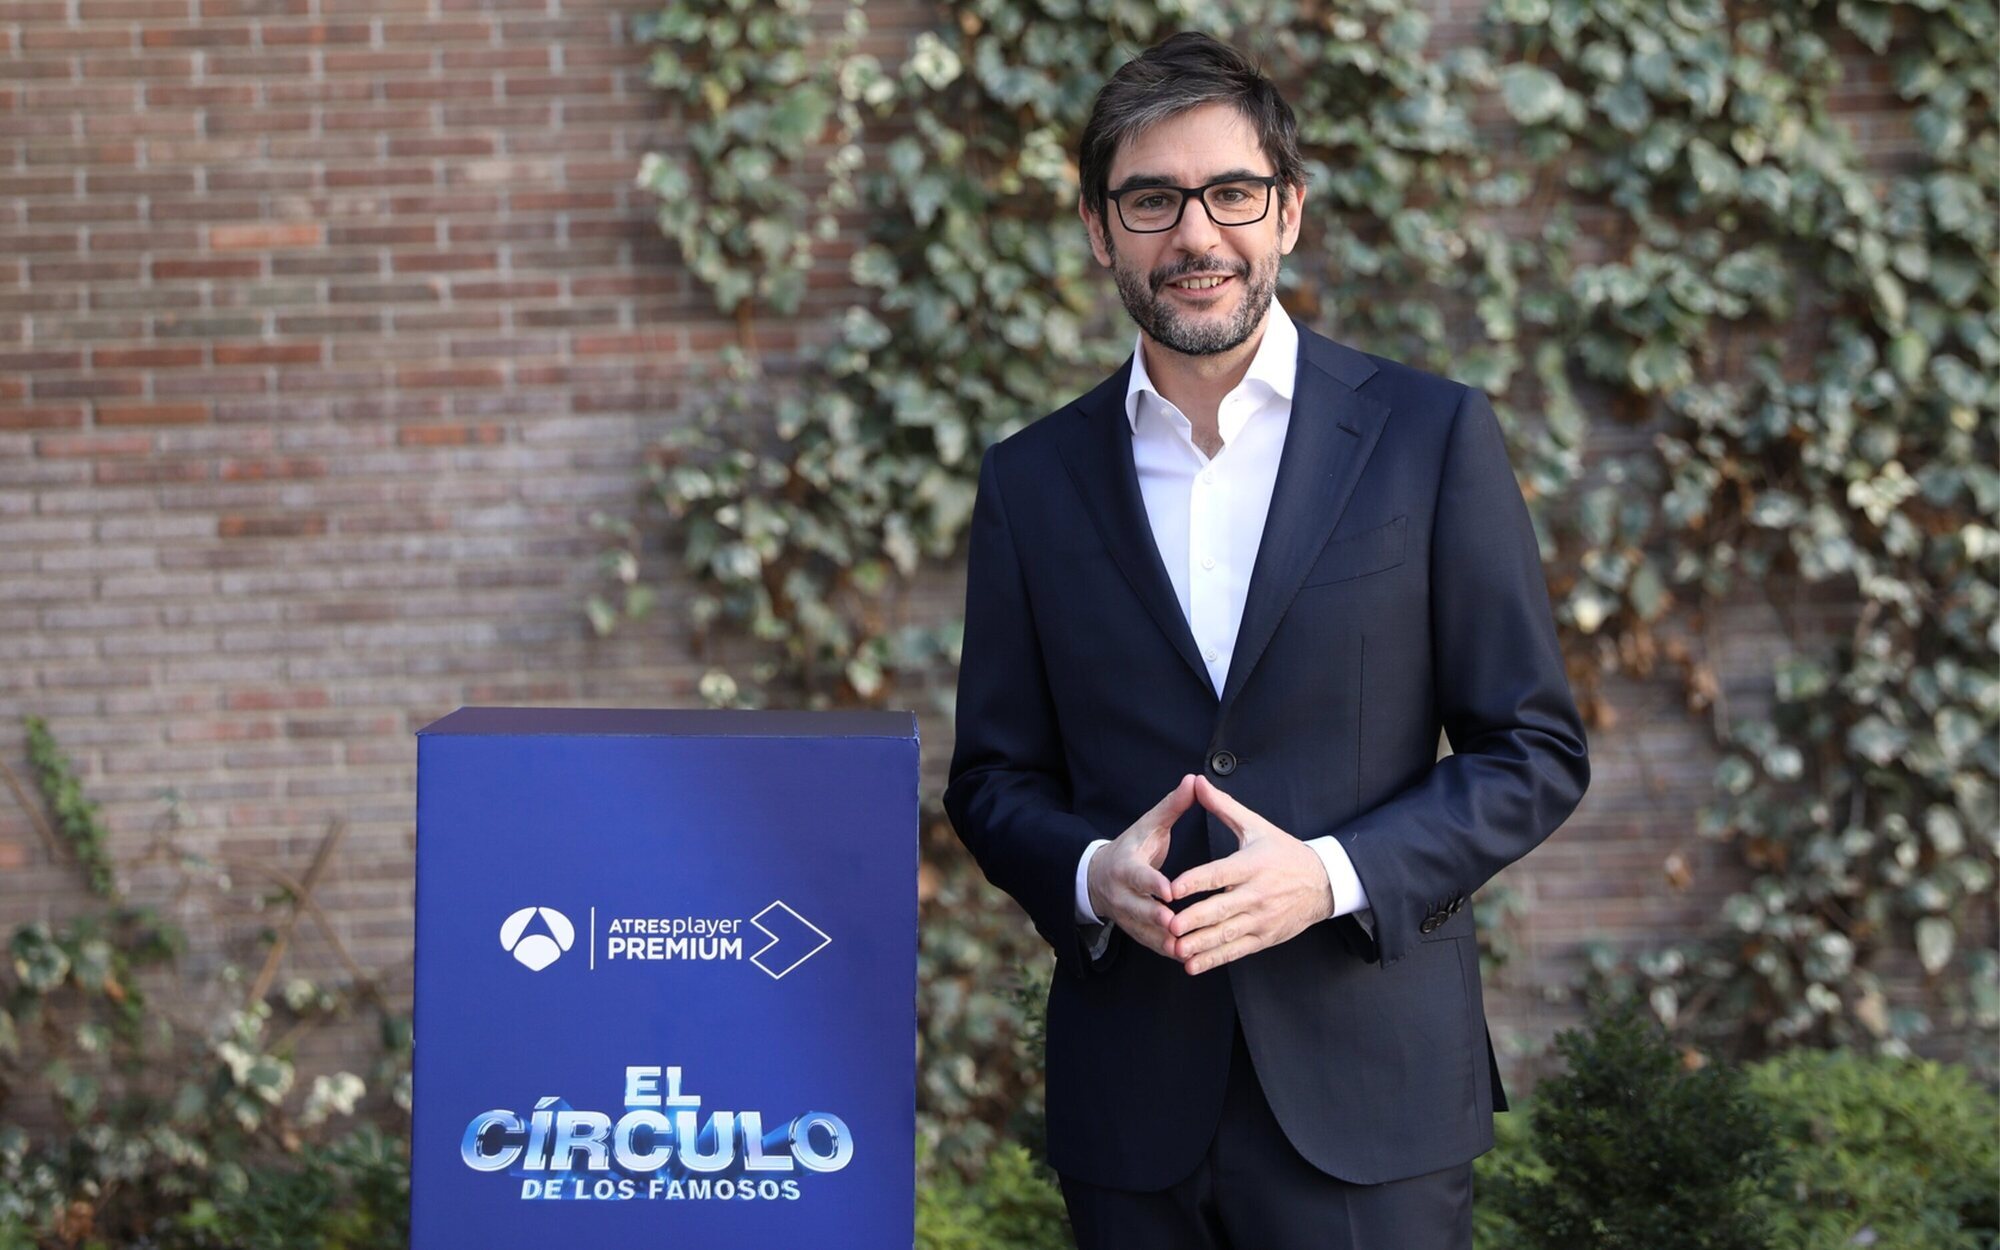 'El círculo de los famosos' se estrena el 8 de febrero en Antena 3